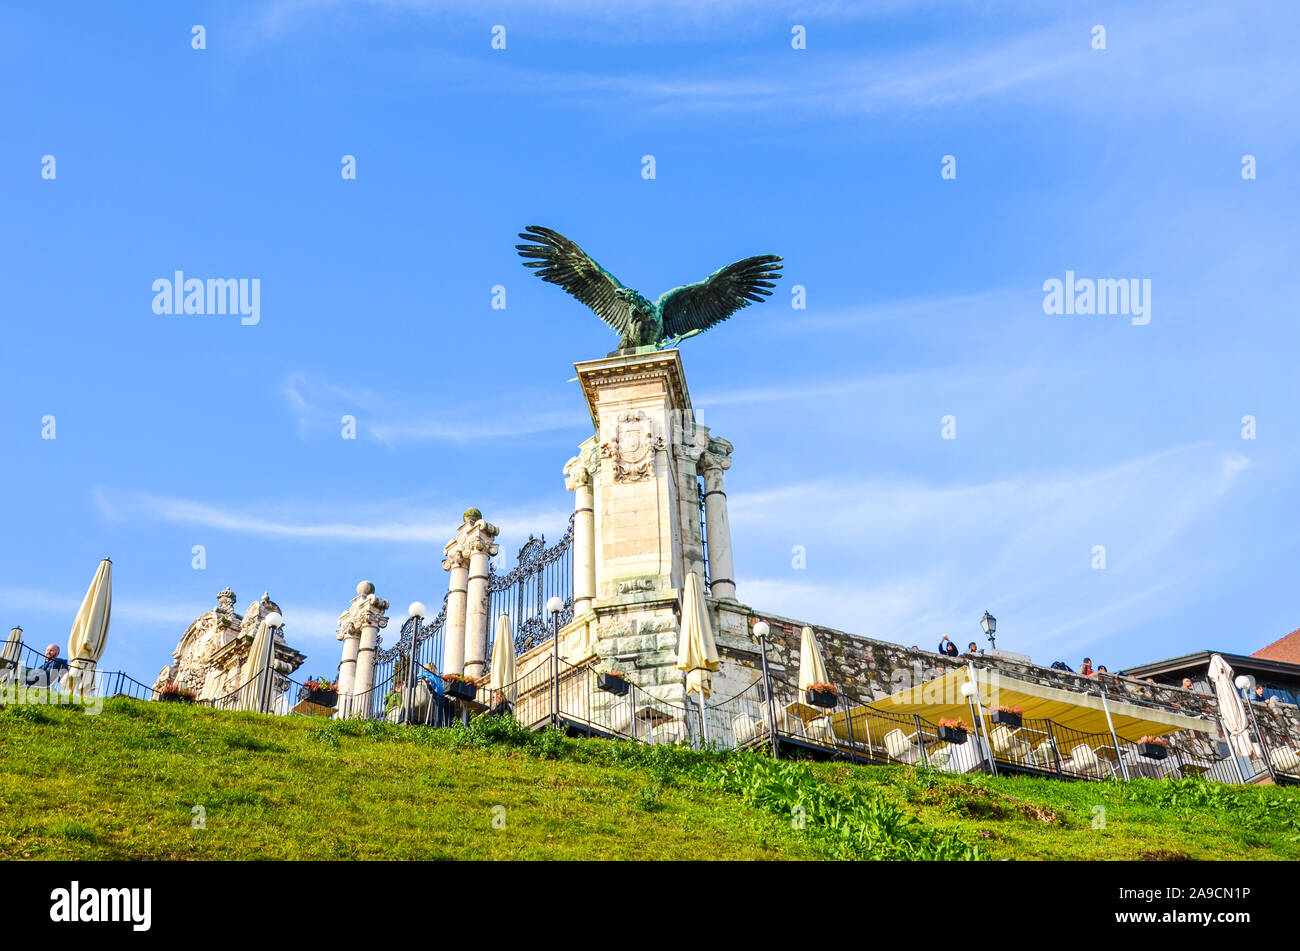 Budapest, Ungheria - Novembre 6, 2019: Statua del Turul uccello sul castello reale. Uccello mitologico delle prede prevalentemente raffigurato come un falco o falcon nella tradizione ungherese. Il simbolo nazionale degli ungheresi. Foto Stock